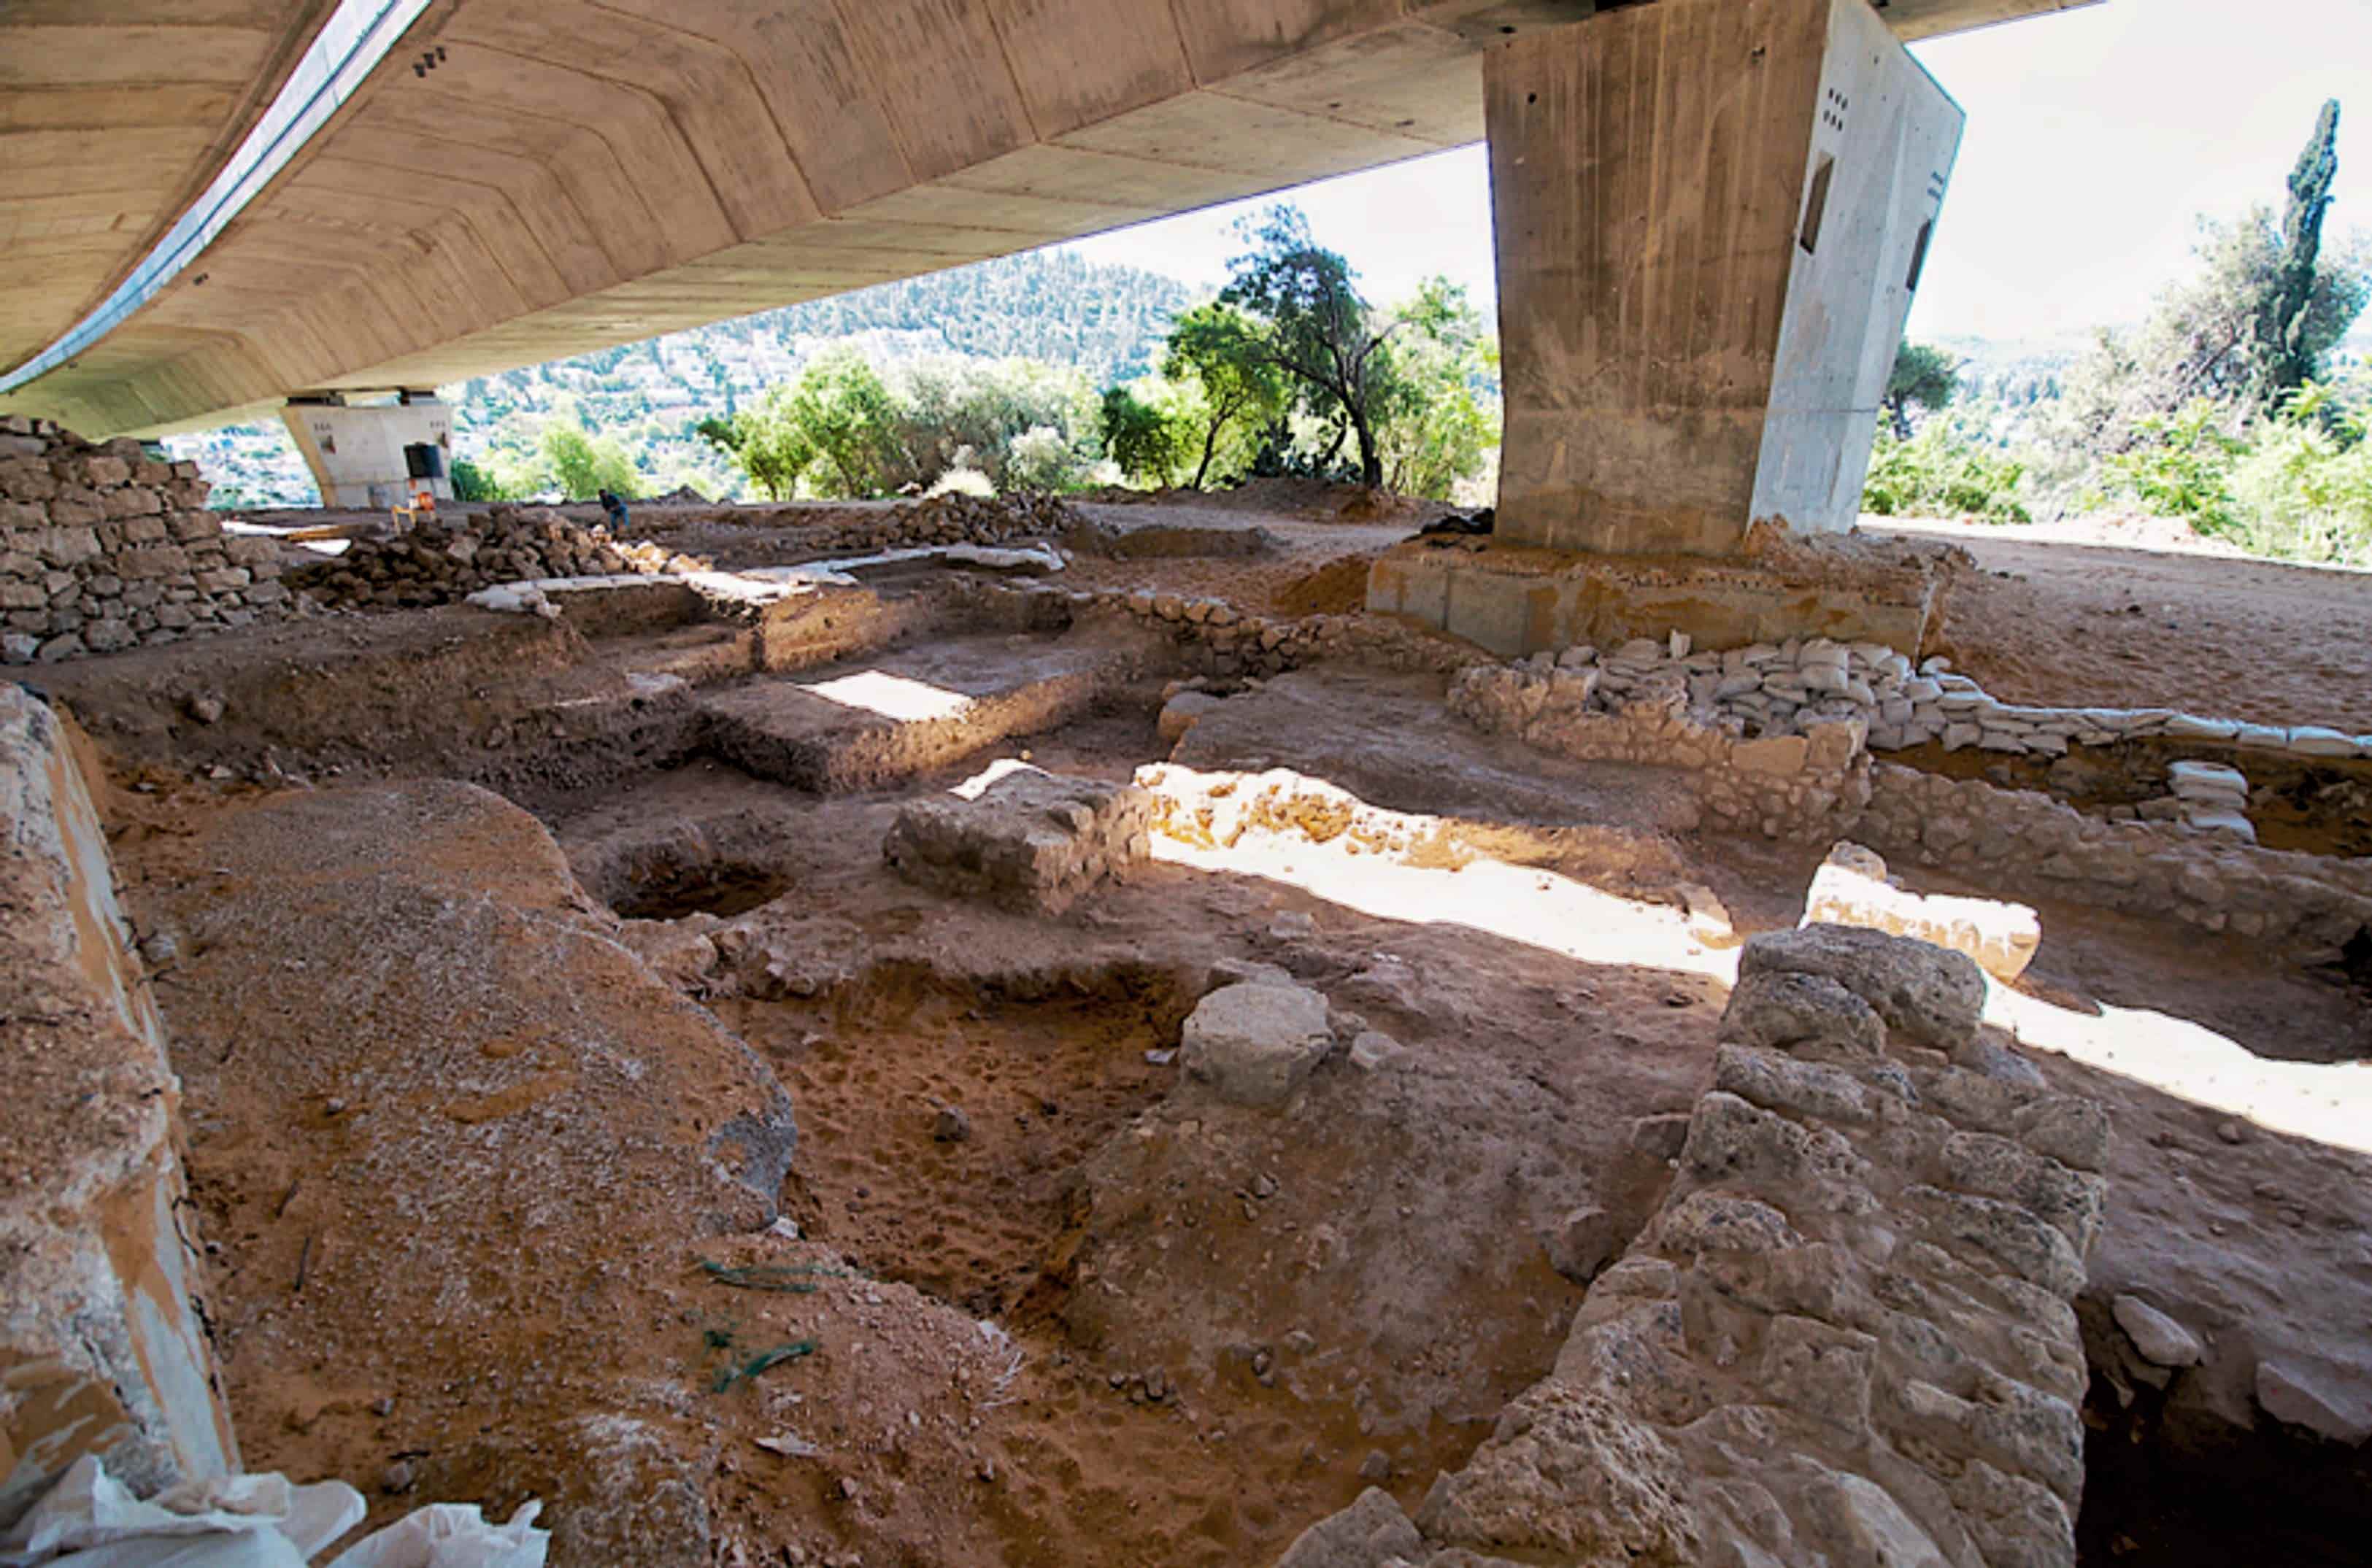 9,000 let staro najdišče v bližini Jeruzalema je "veliki pok" prazgodovinske naselbine 2